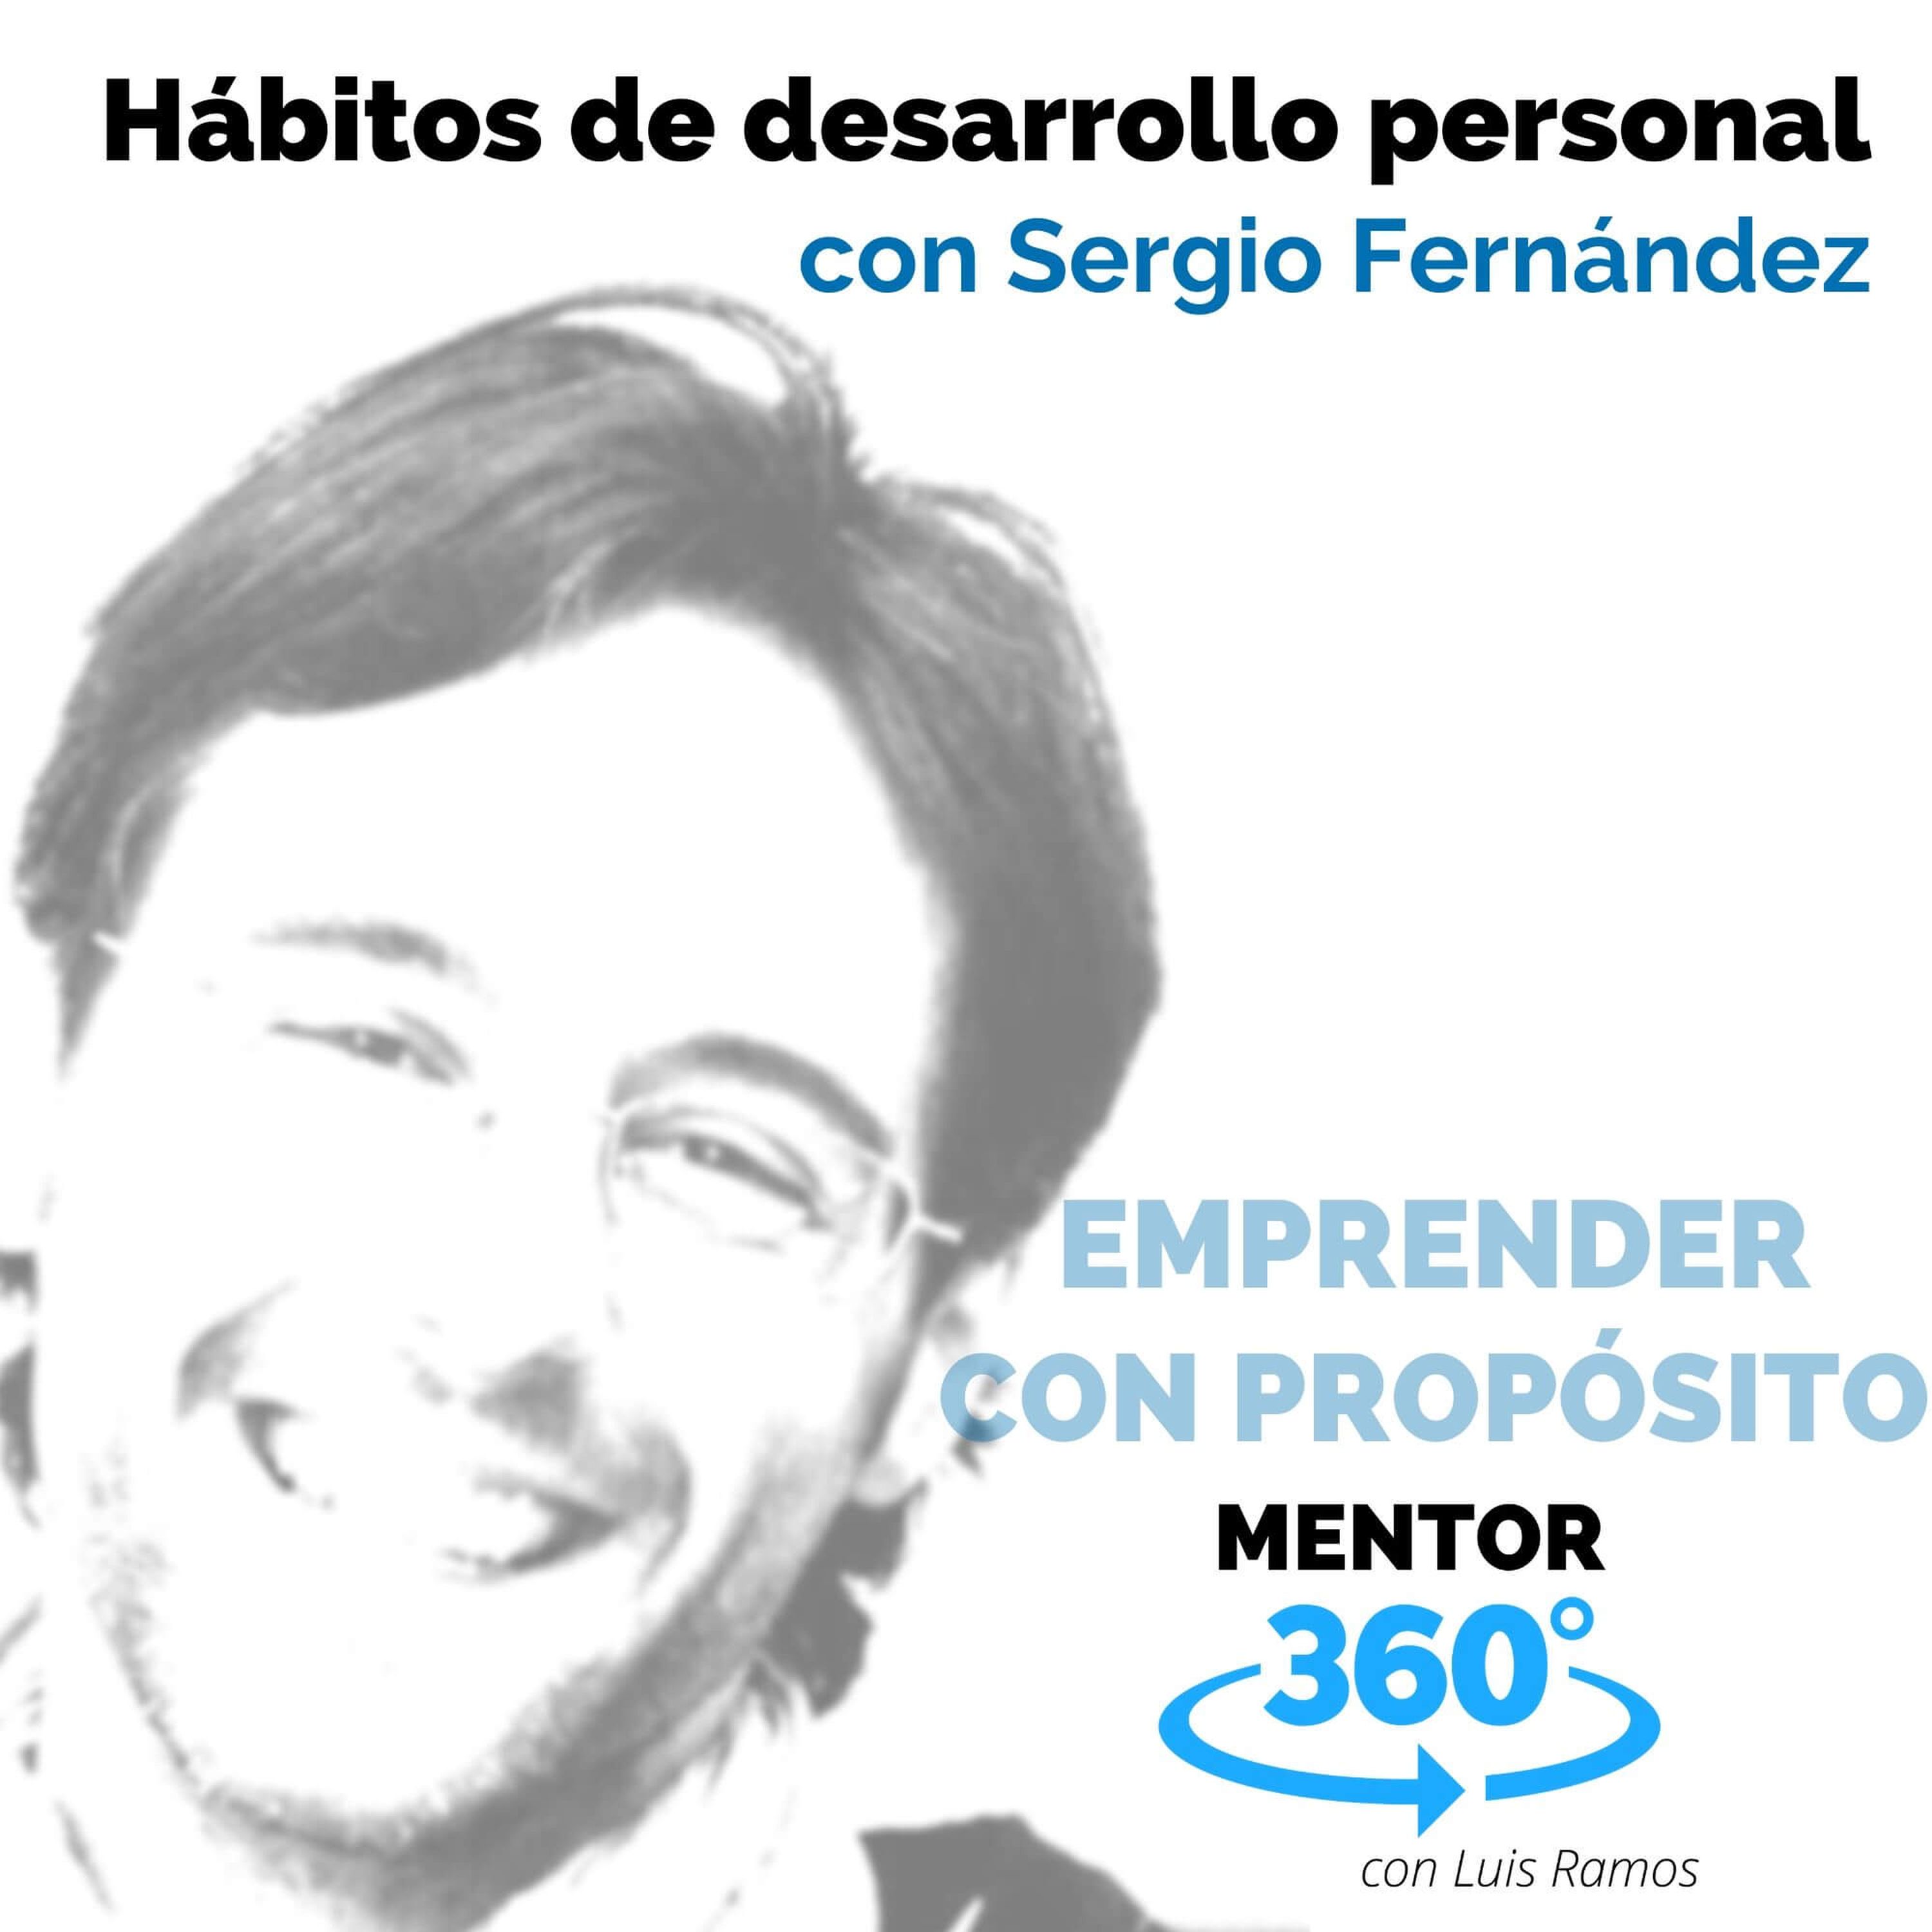 Hábitos de desarrollo personal, con Sergio Fernández - EMPRENDER CON PROPÓSITO